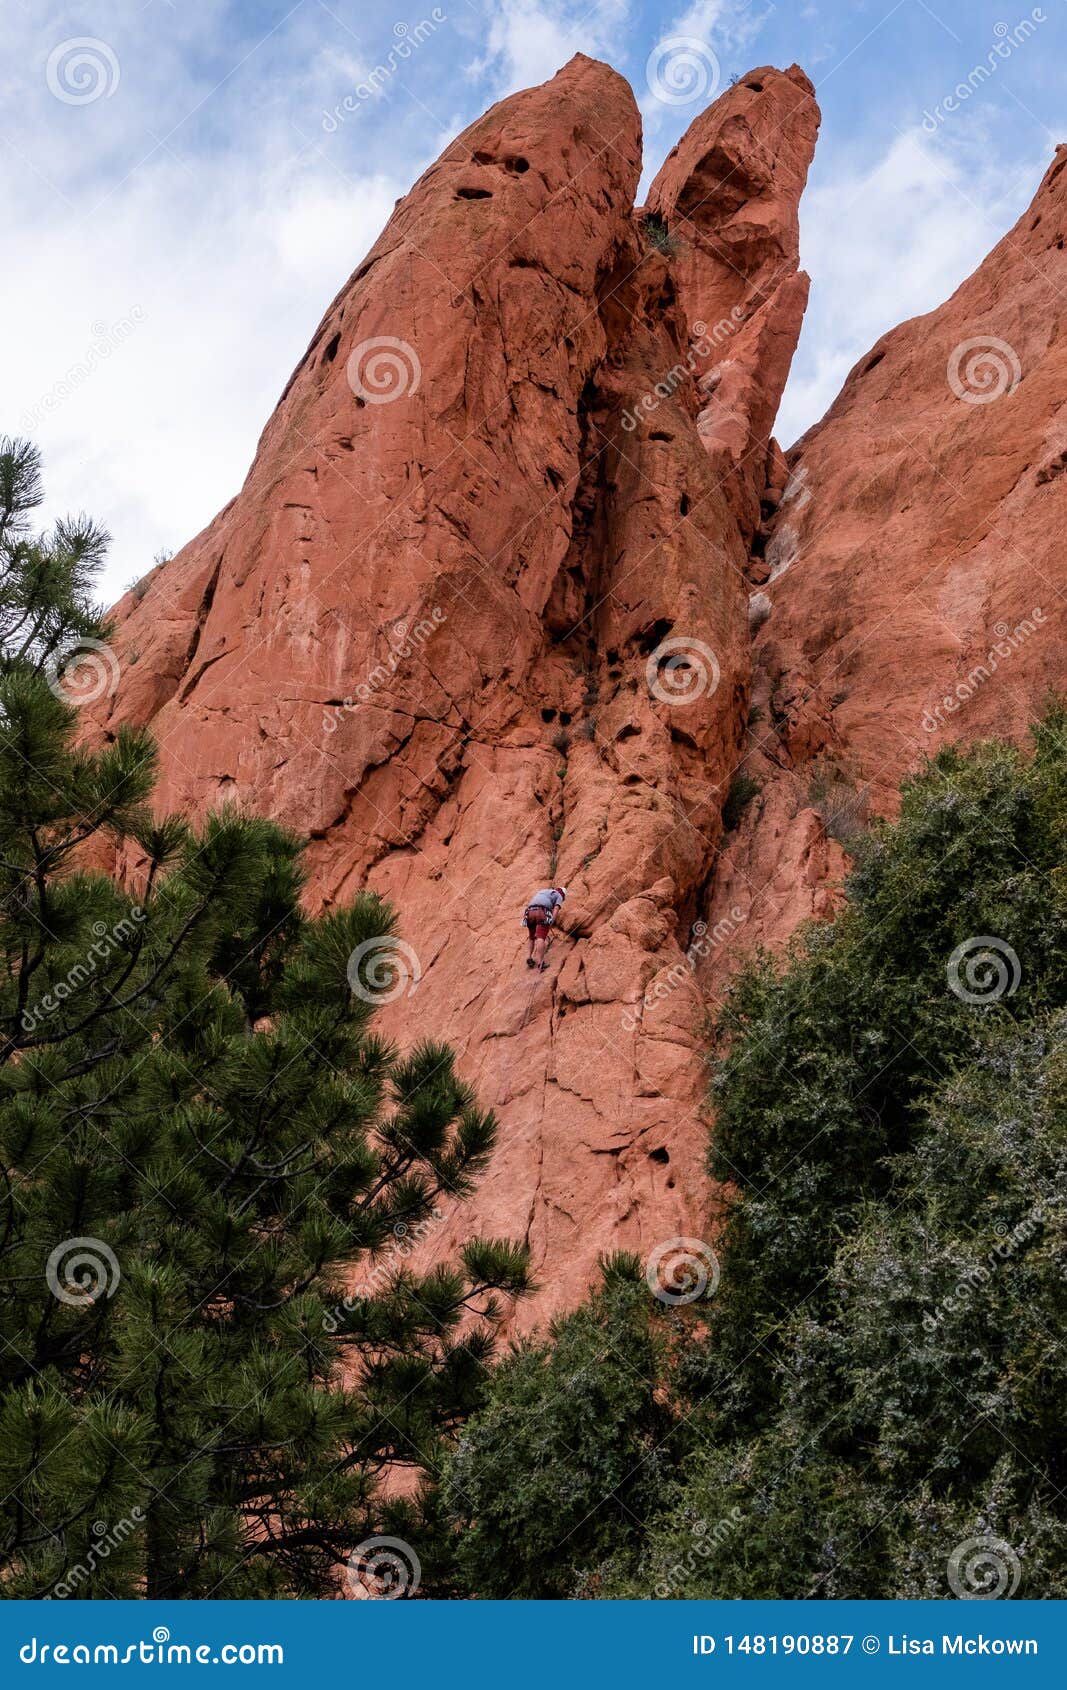 Mountain Climber Rock Climbing At Garden Of The Gods Colorado